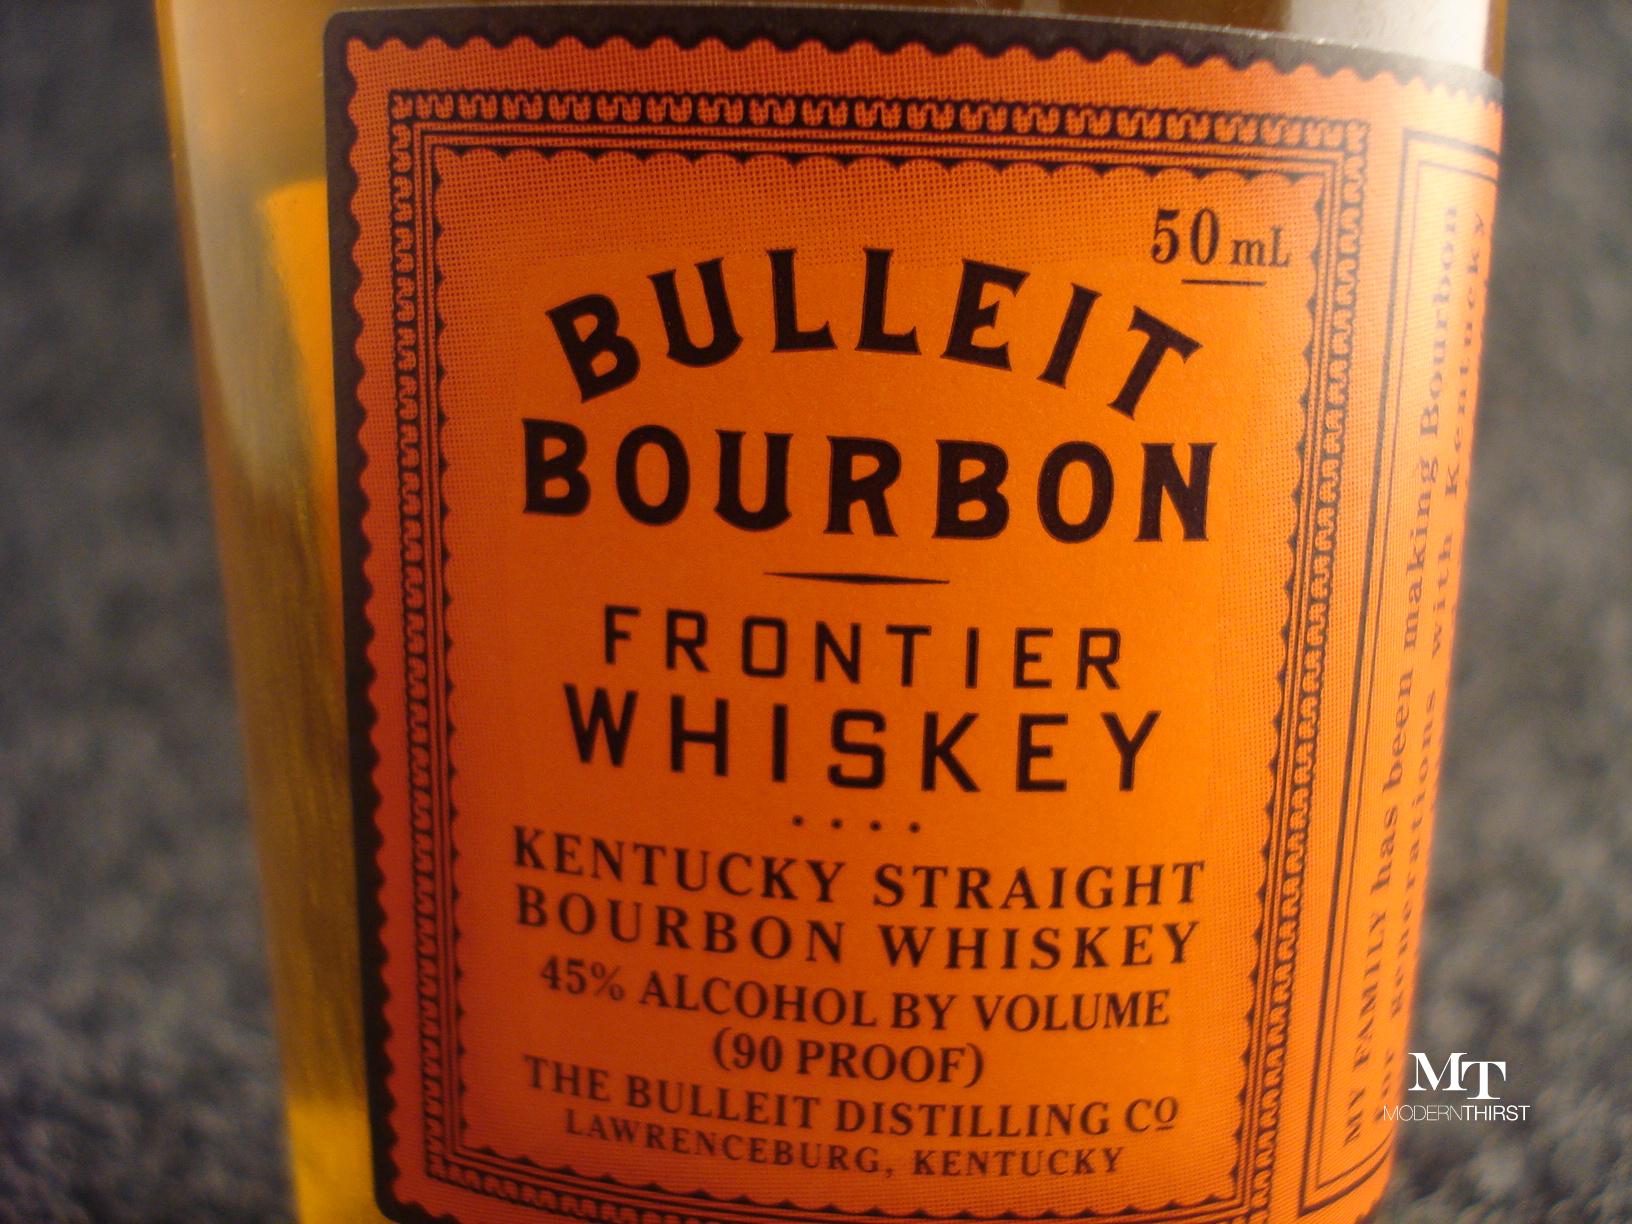 Reader – Requested ModernThirst Bourbon Bulleit Bourbon Review: